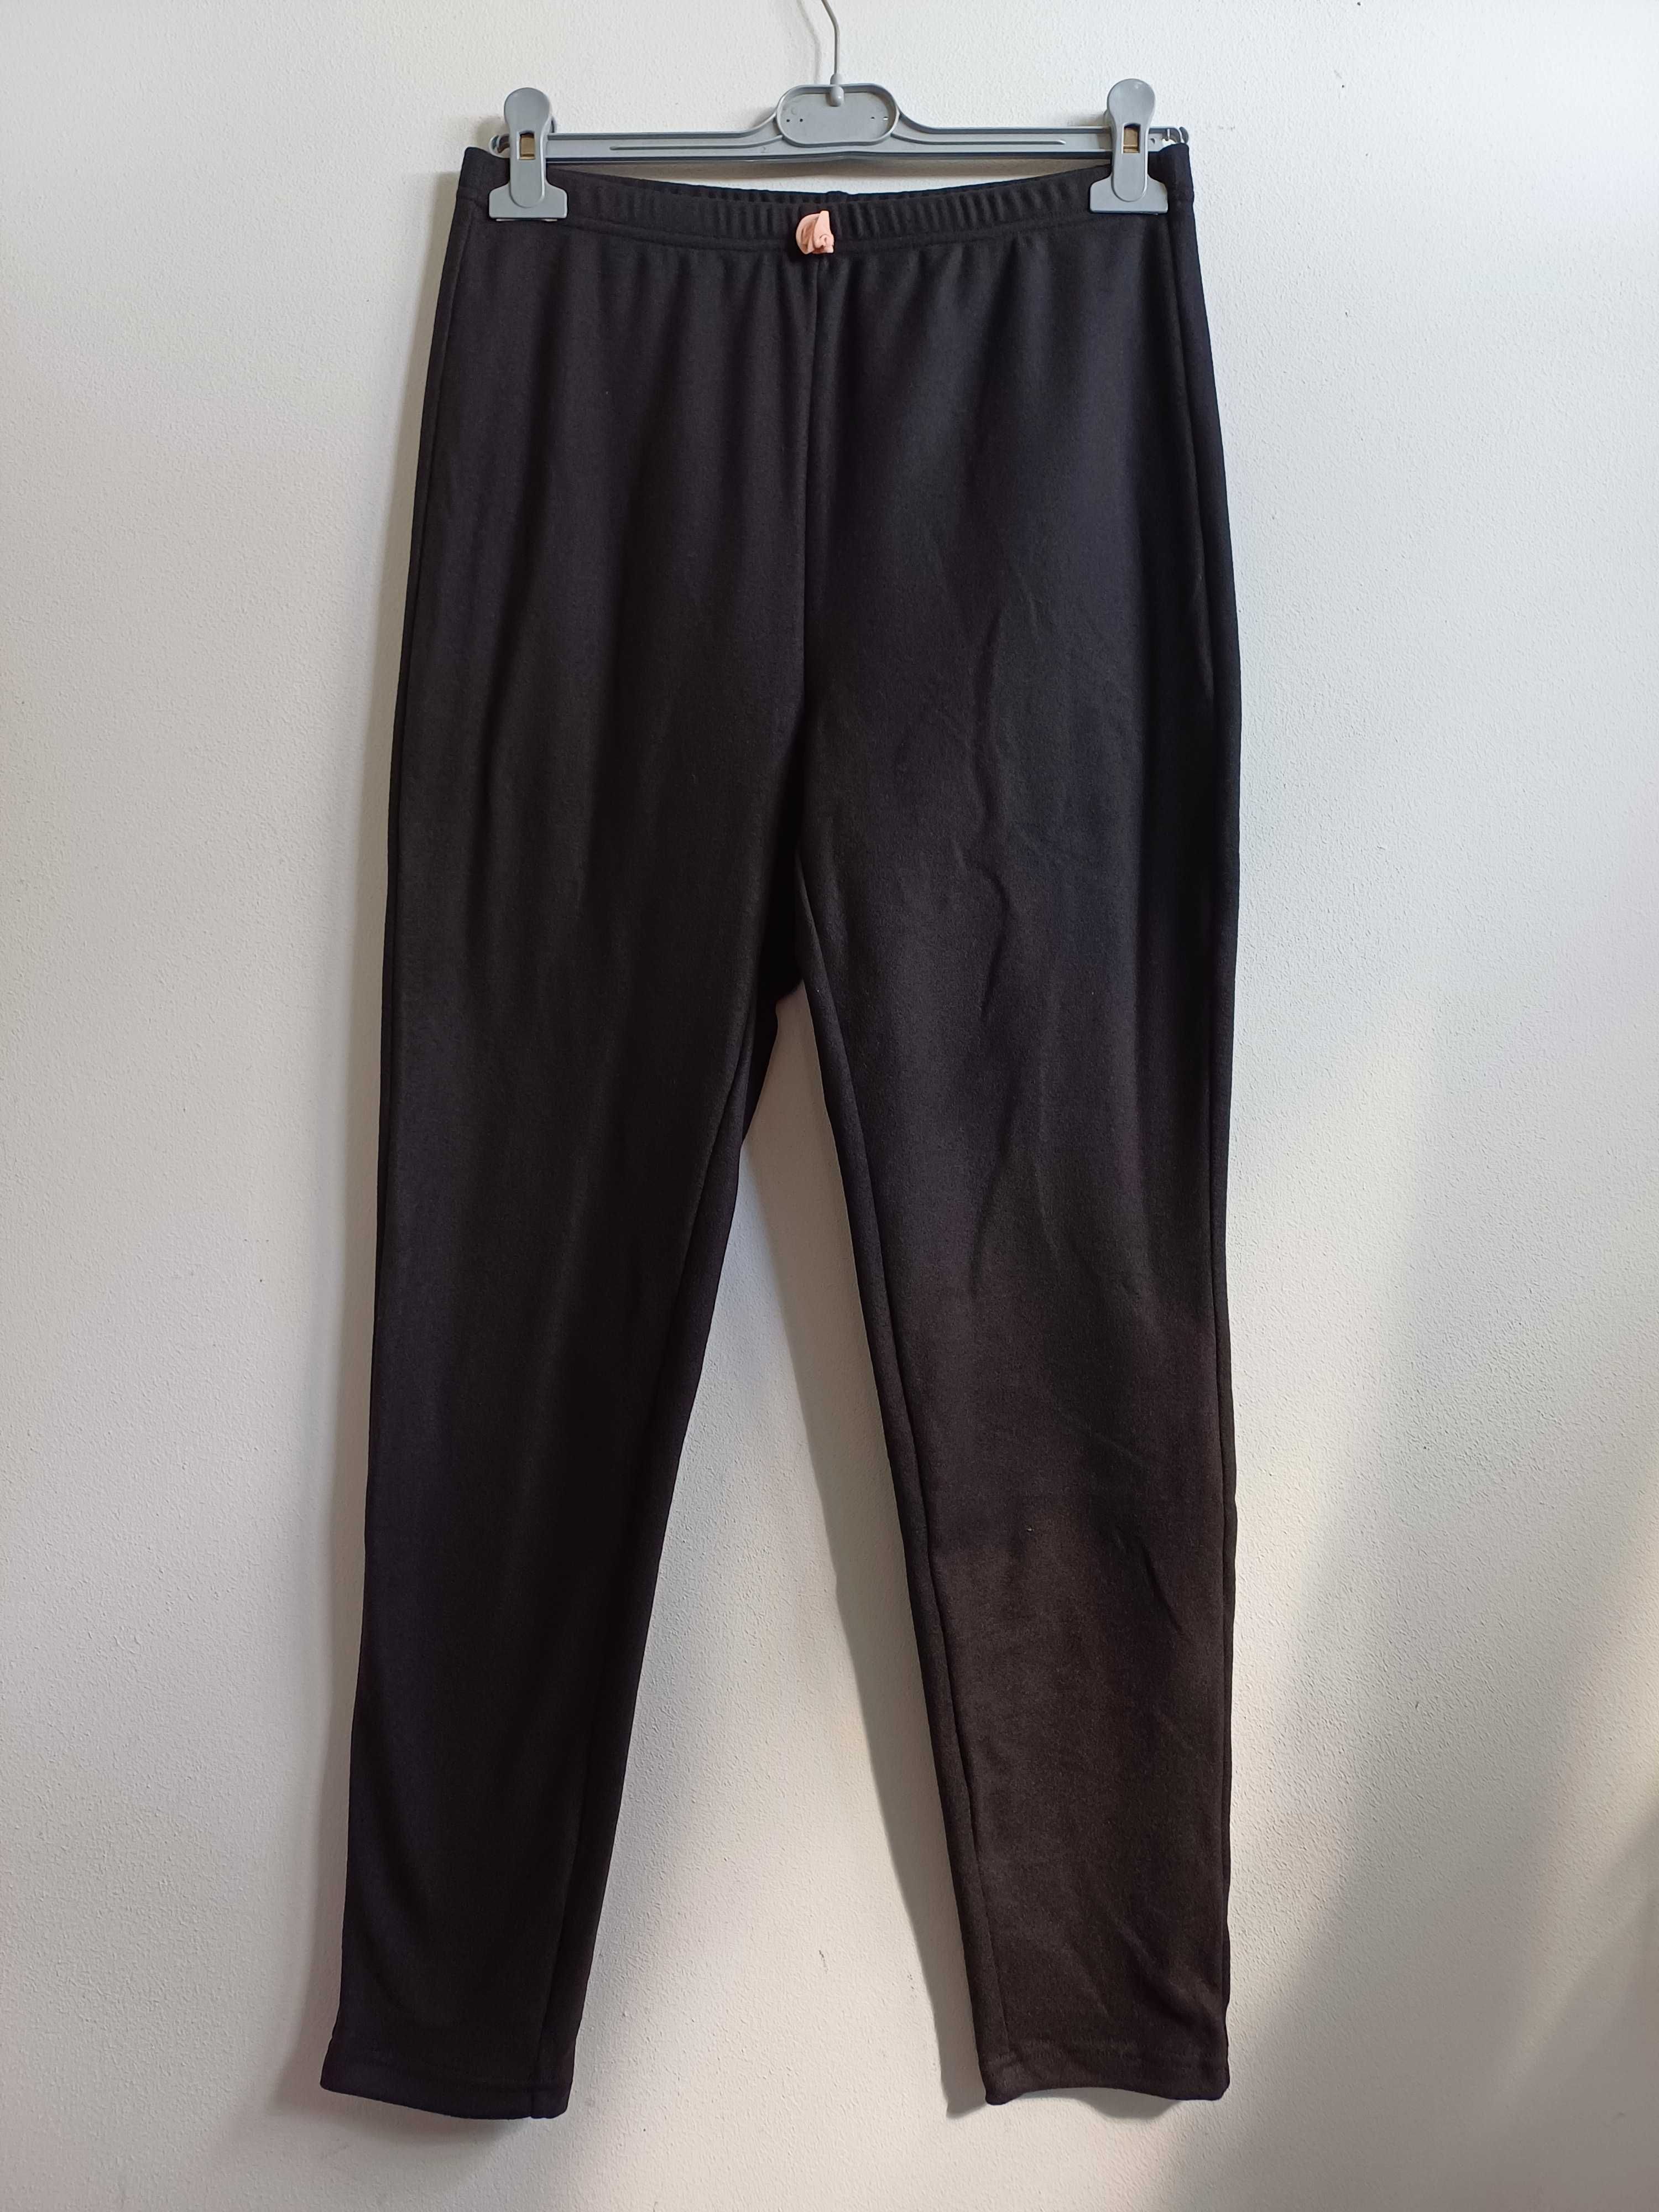 Spodnie, legginsy damskie r. L/XL/XXL